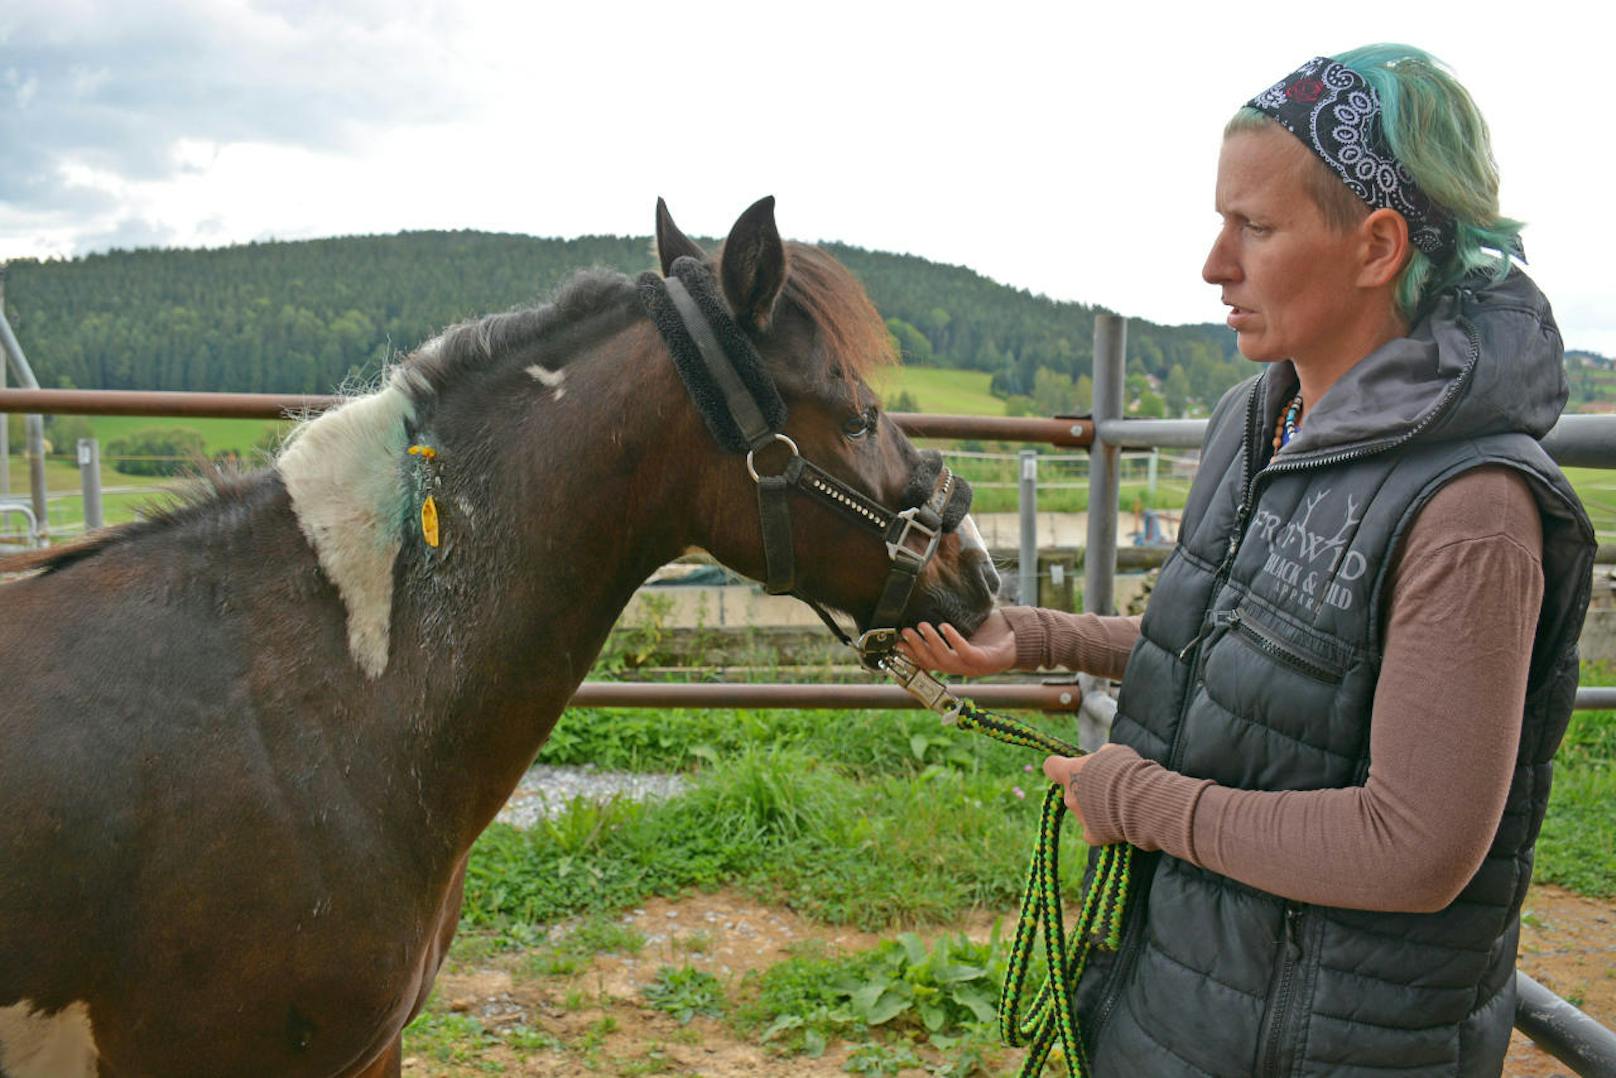 Pony "Eskimo" wurde von einem Tierhasser schwer verletzt. Besitzerin Daniela Seidel ist schockiert.